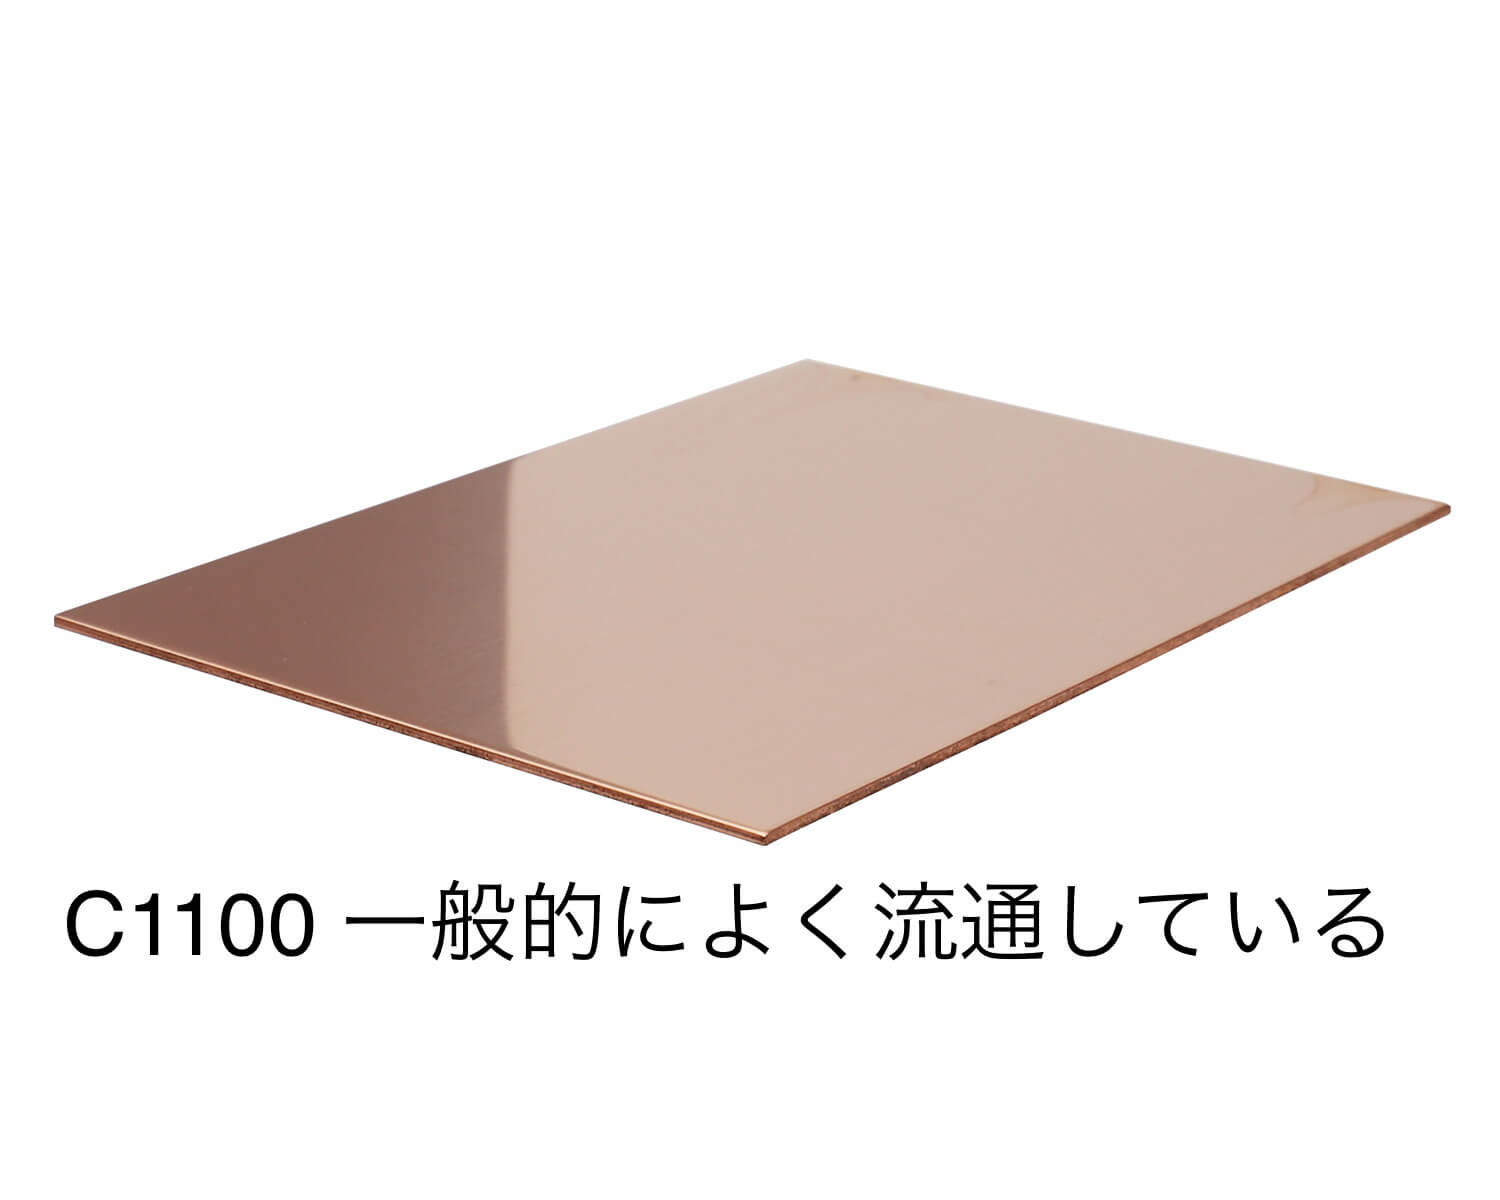 スノーブルー 銅板 切り板 シャーリングカット(生地でのお渡し) 国内調達品 板厚3.0mm×幅350mm×長さ350mm 